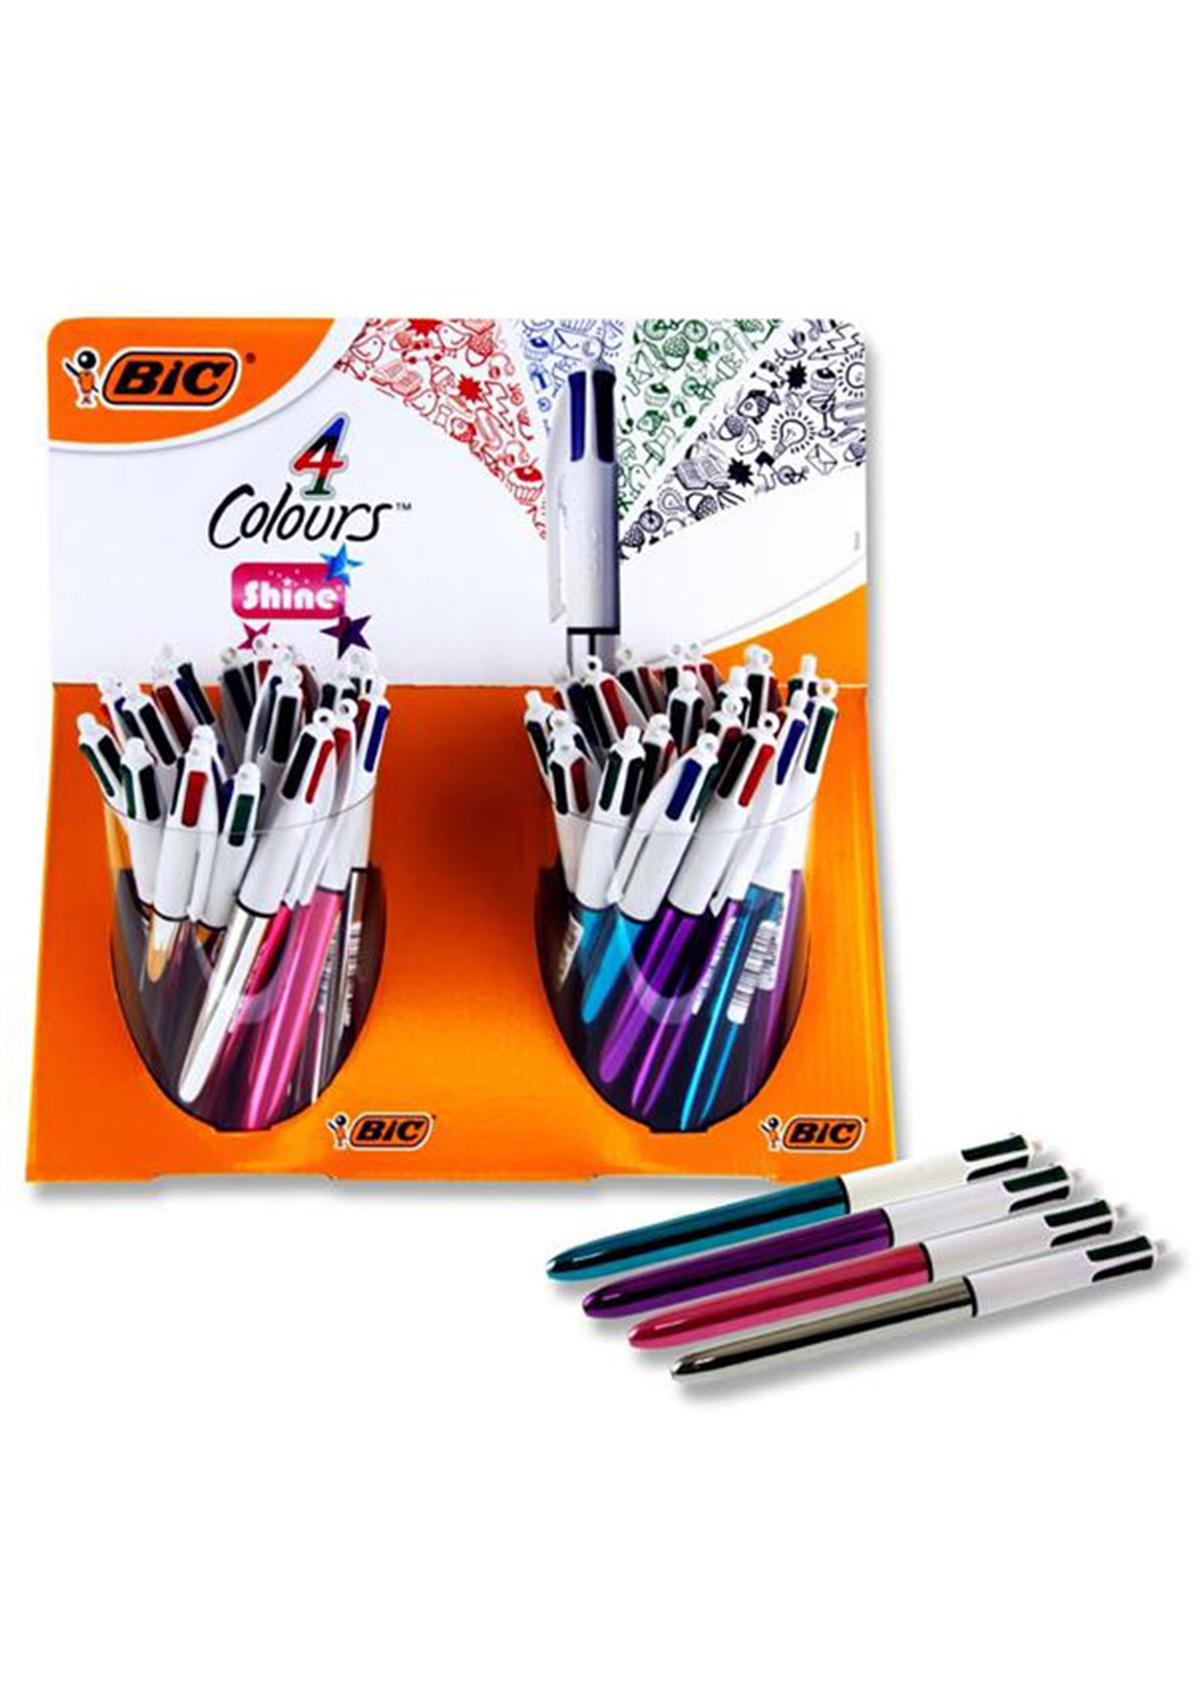 4 Colour Ballpoint Pen - Shine 4 Asst Cdu